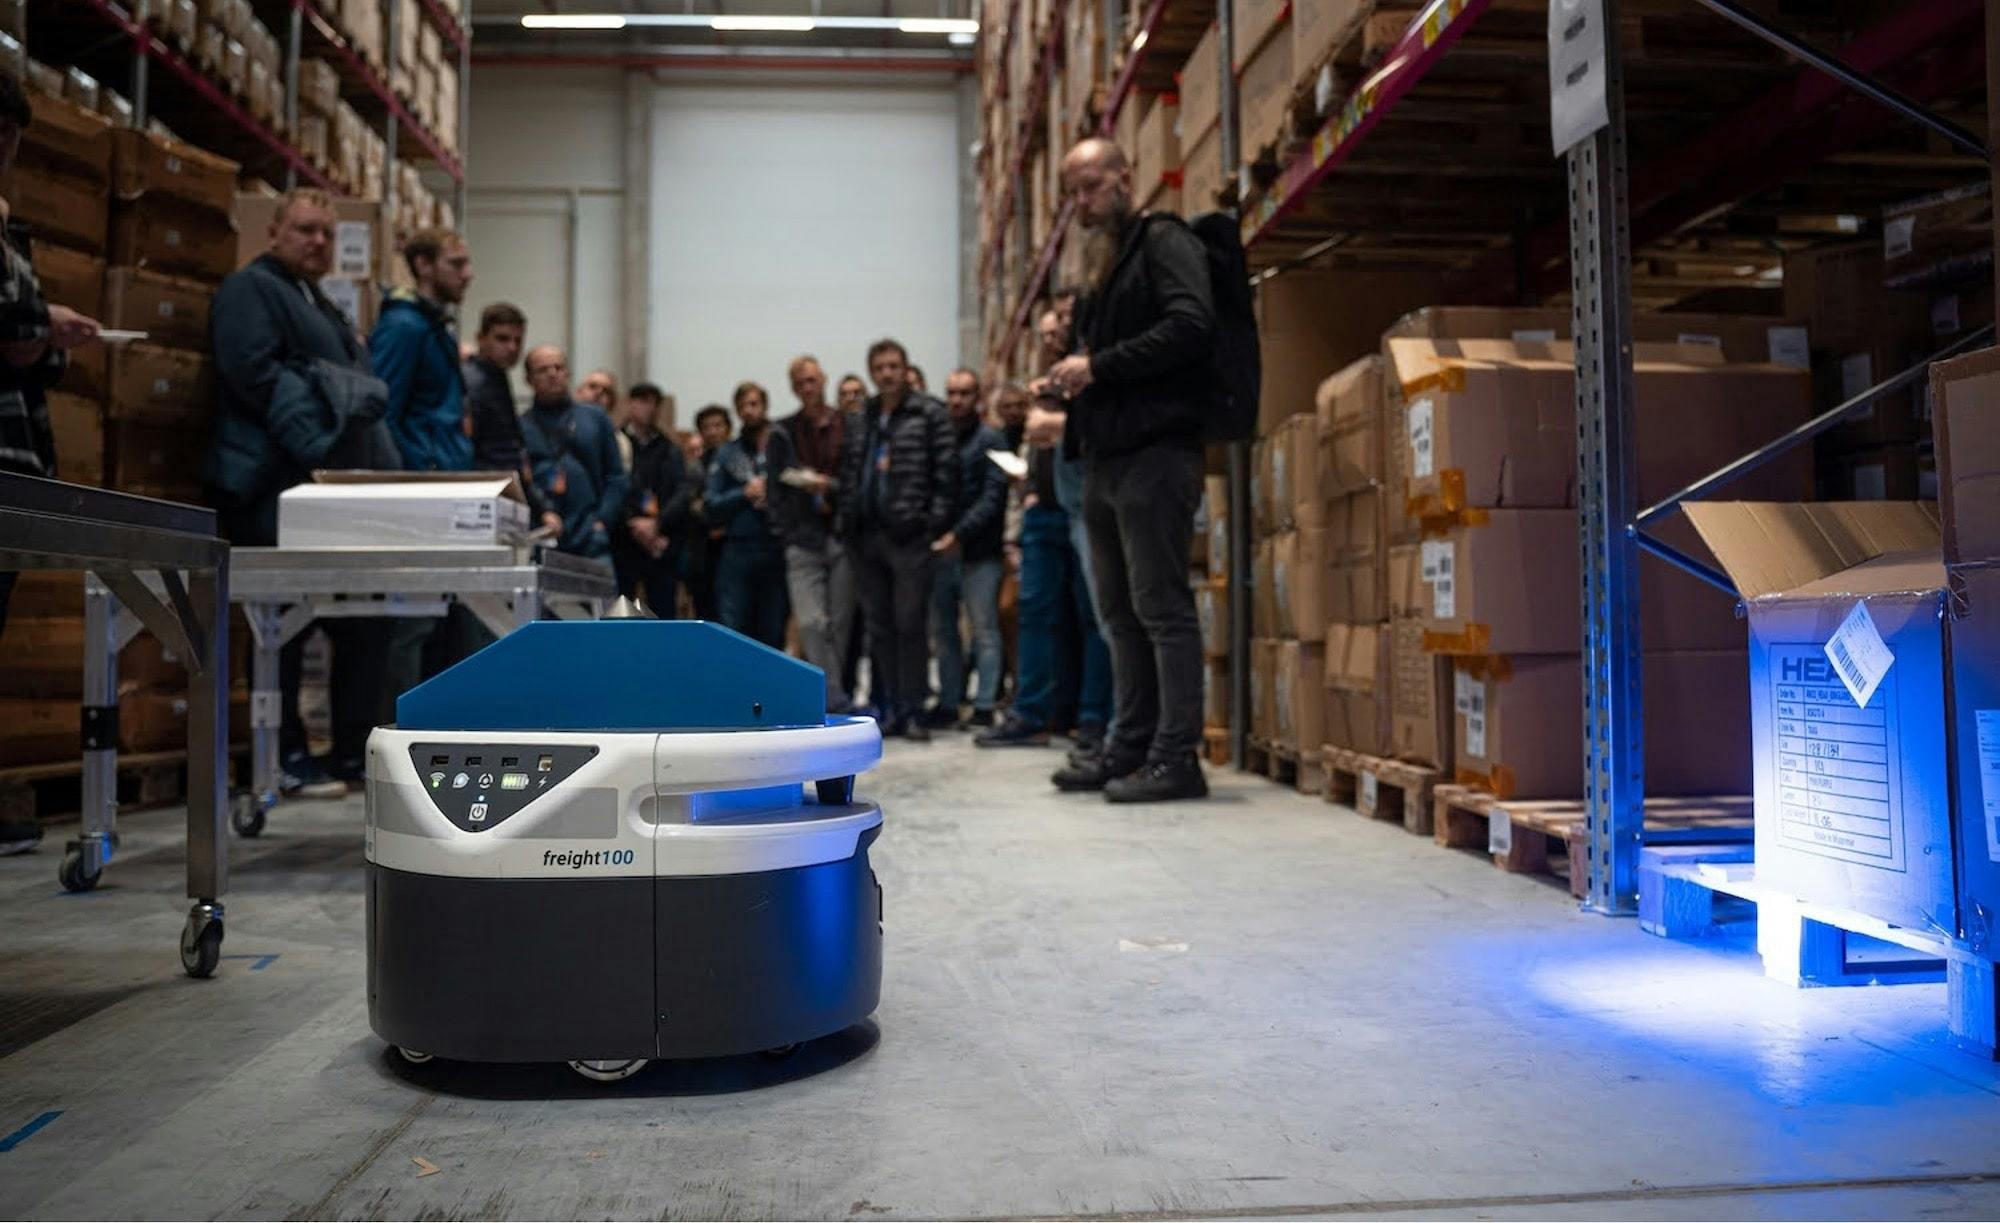 Ukázka autonomních robotů v distribučním centru Skladon